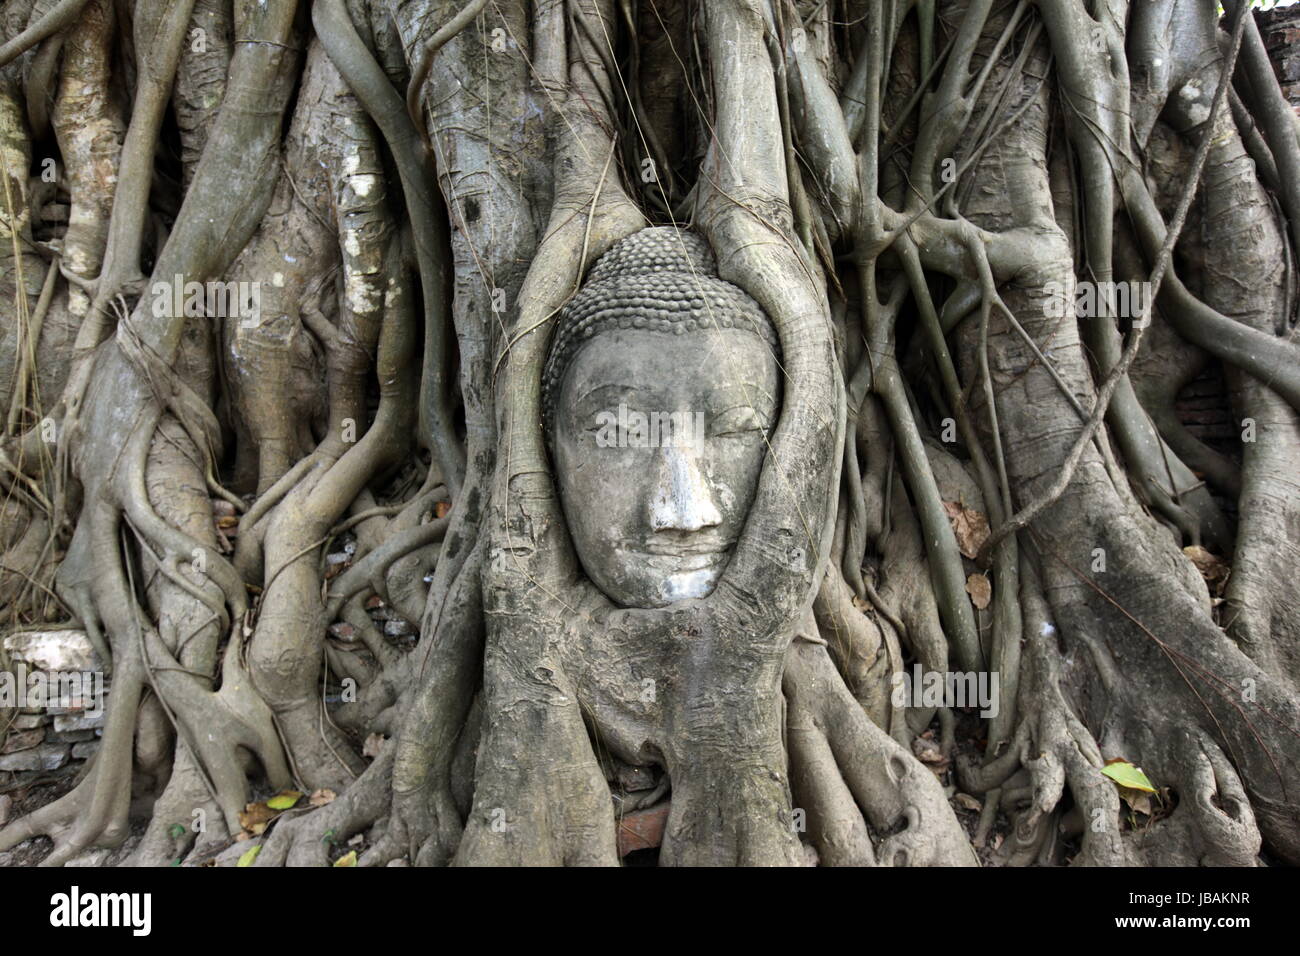 Ein in einem Baum eingeflechteter Steinkopf im Wat Phra Mahathat Tempel in der Tempelstadt Ayutthaya noerdlich von Bangkok in Thailand. Stock Photo